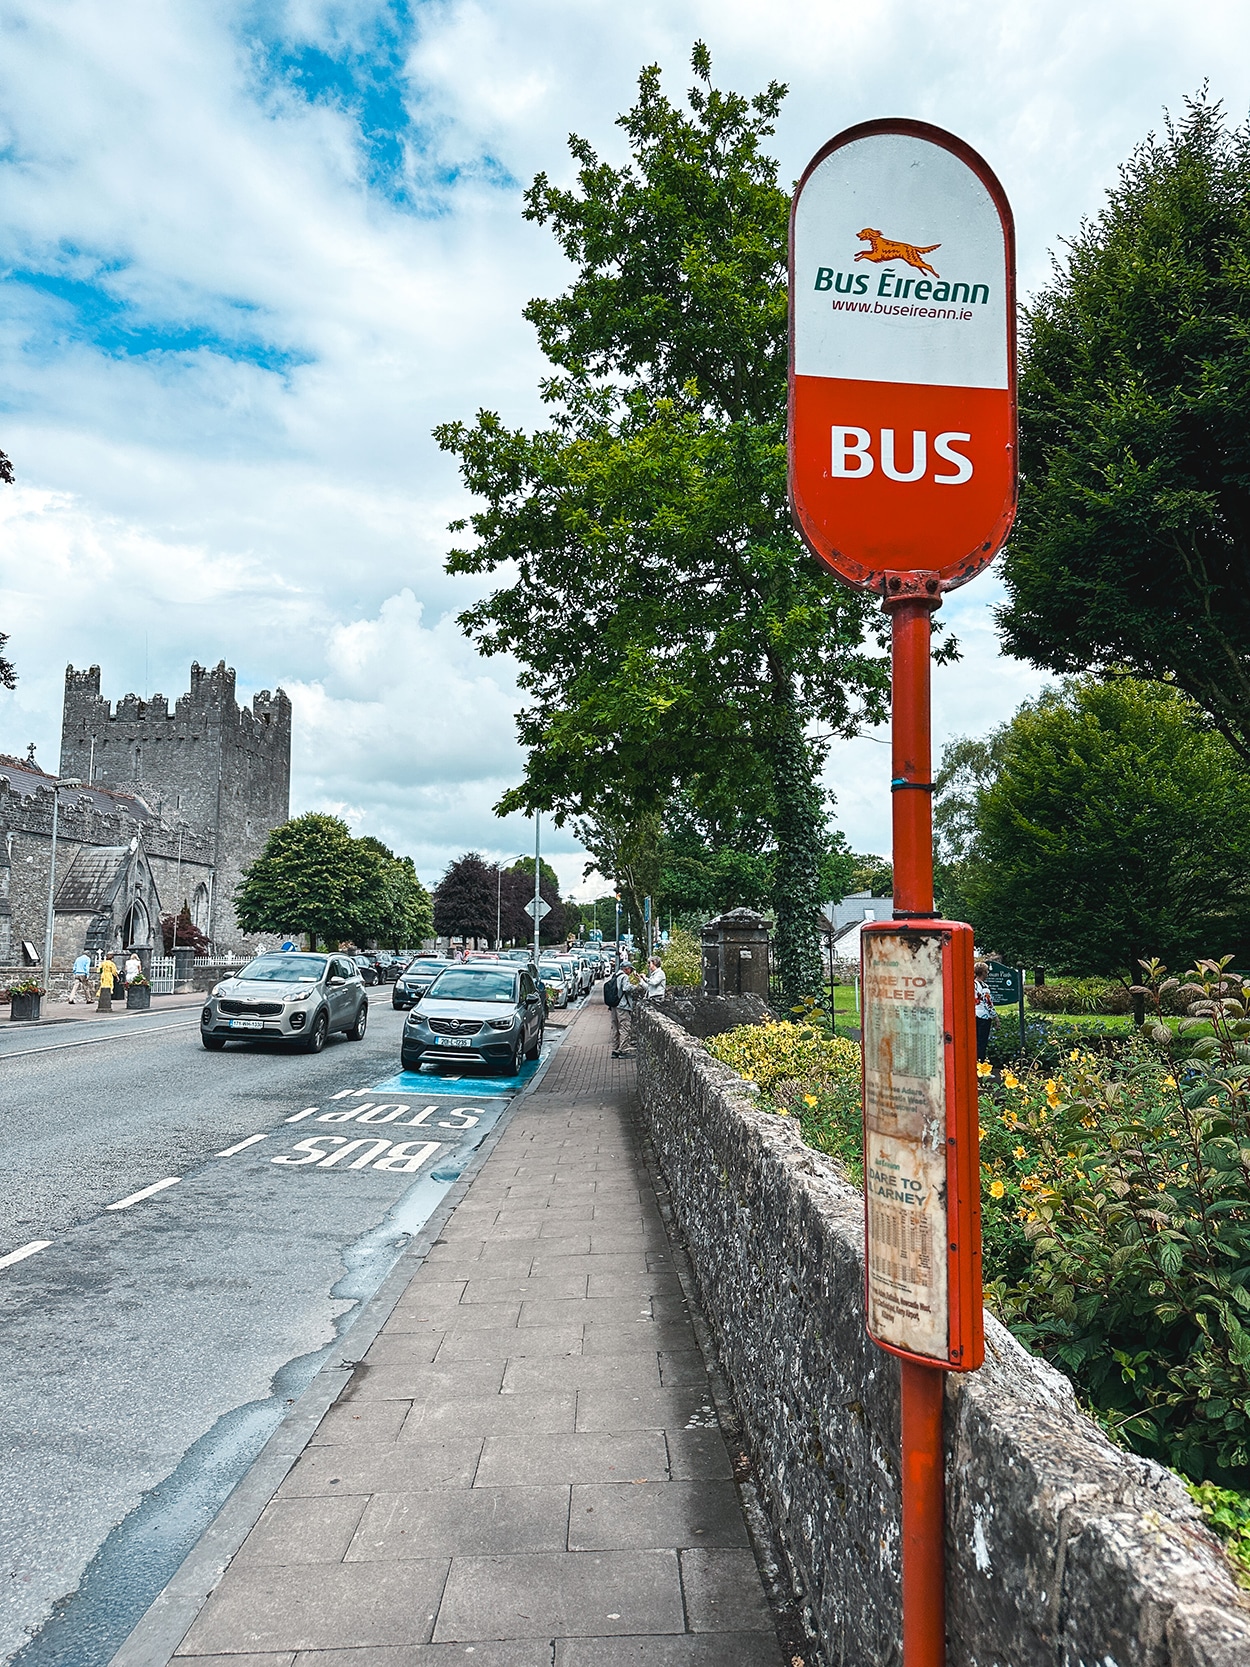 Bus Stop in Adare Ireland